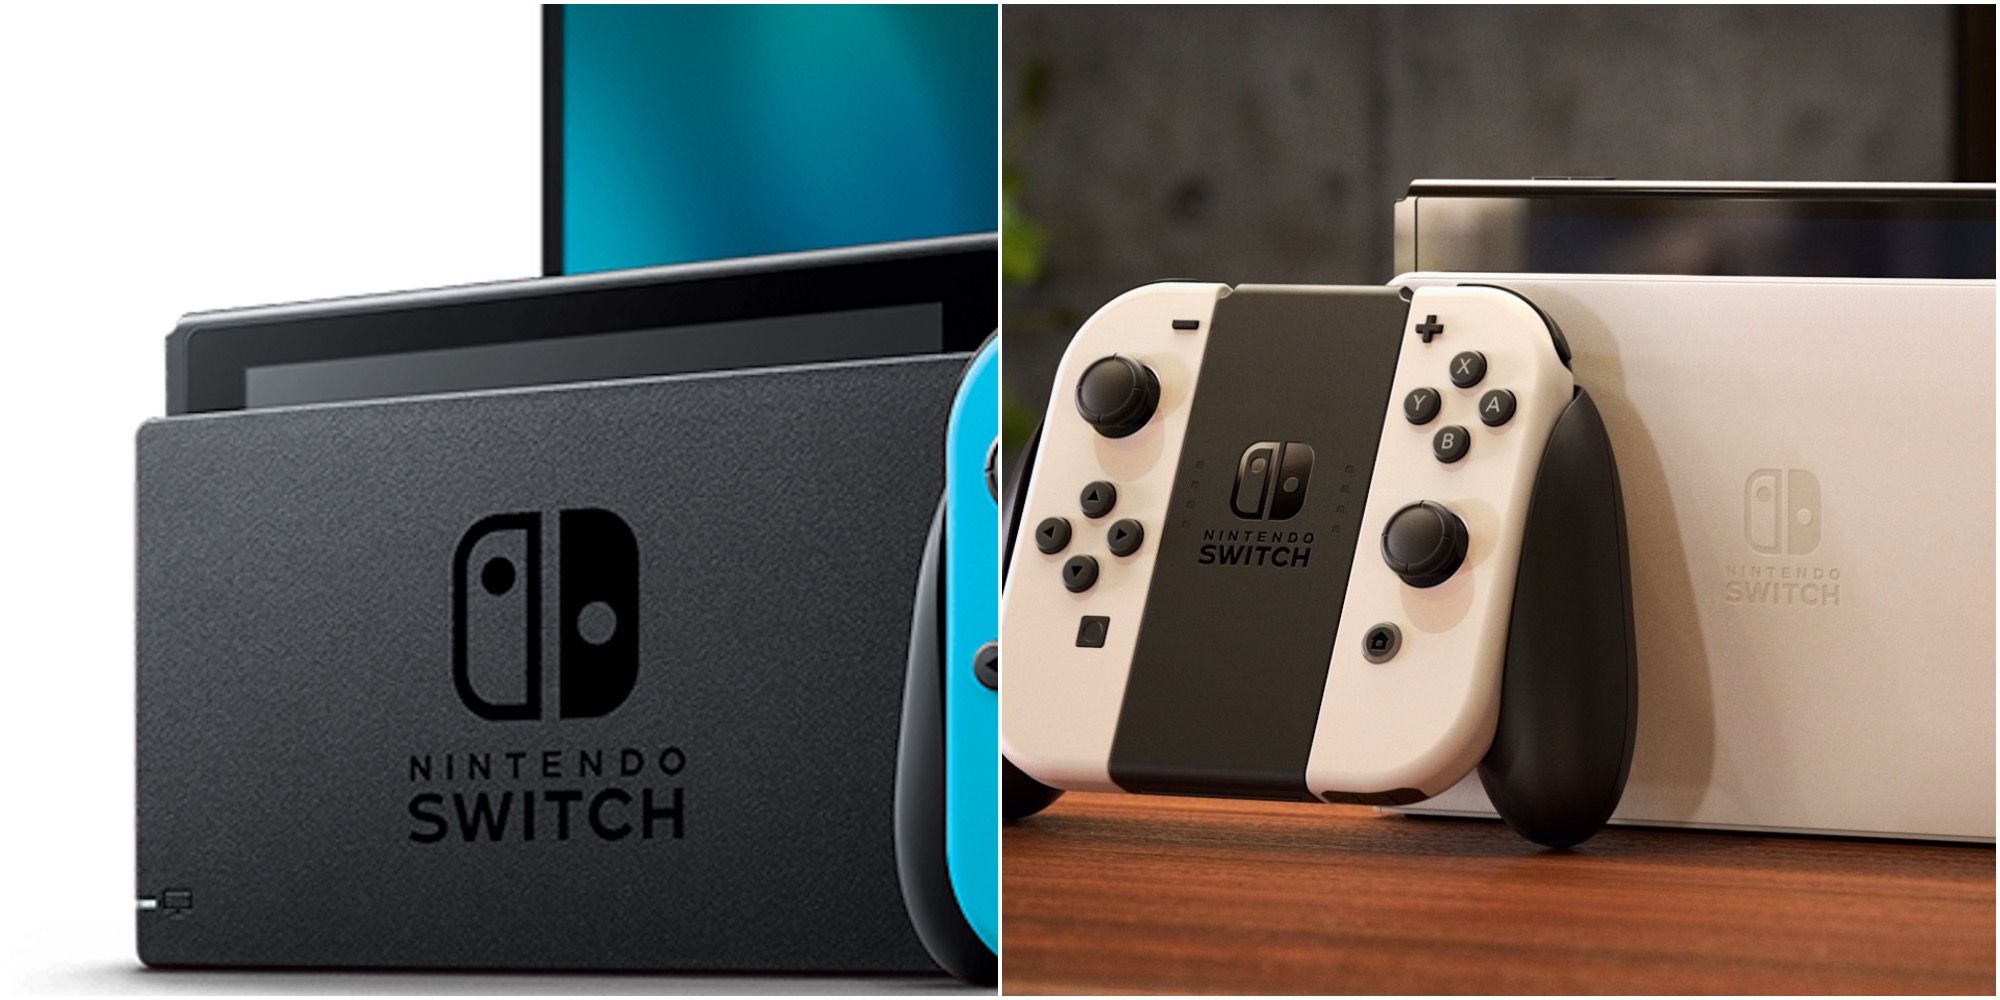 6 almindelige misforståelser omkring Nintendo Switch